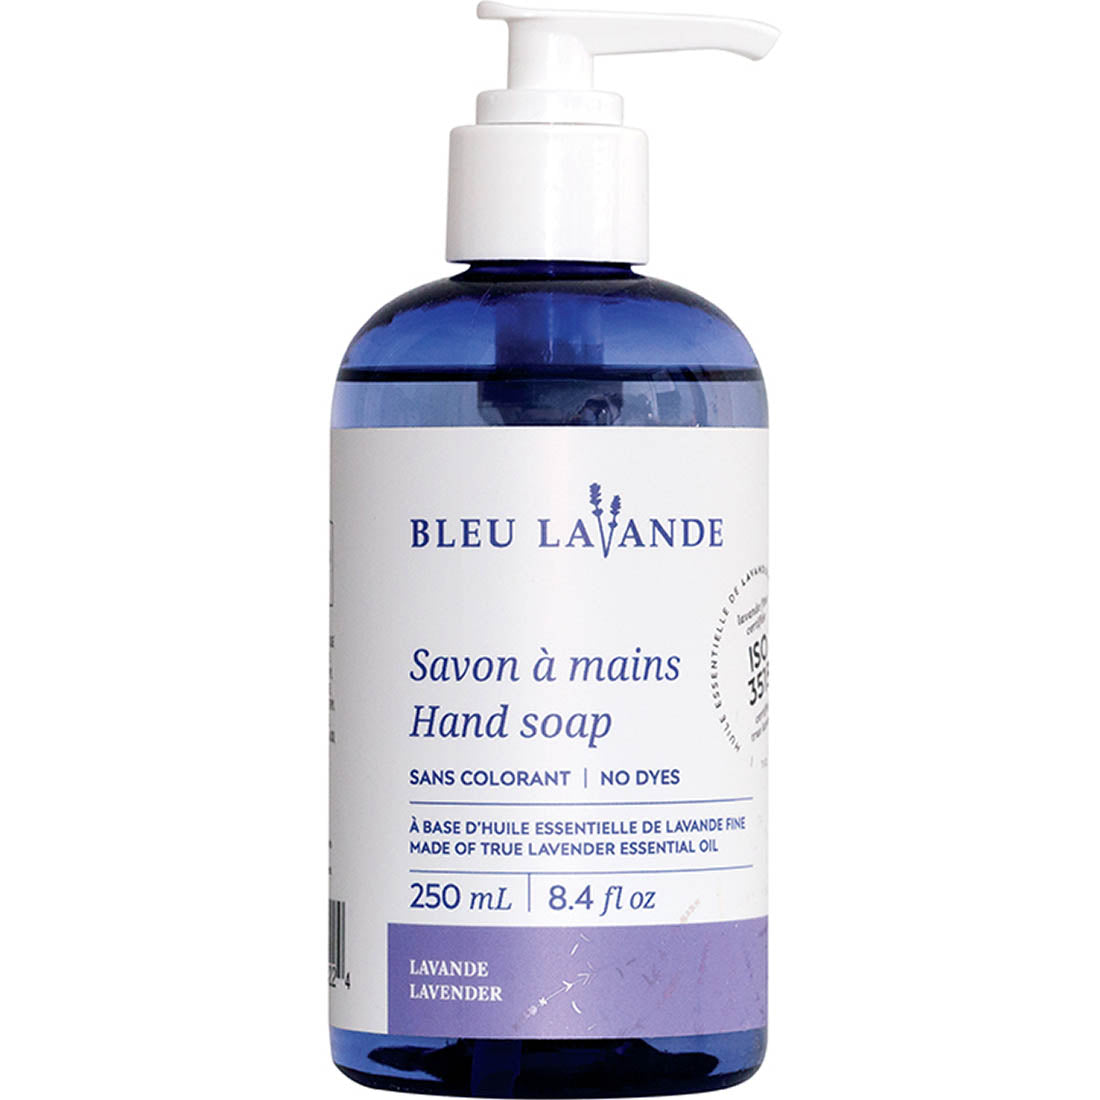 Bleu Lavande Lavender Hand Soap, 250ml